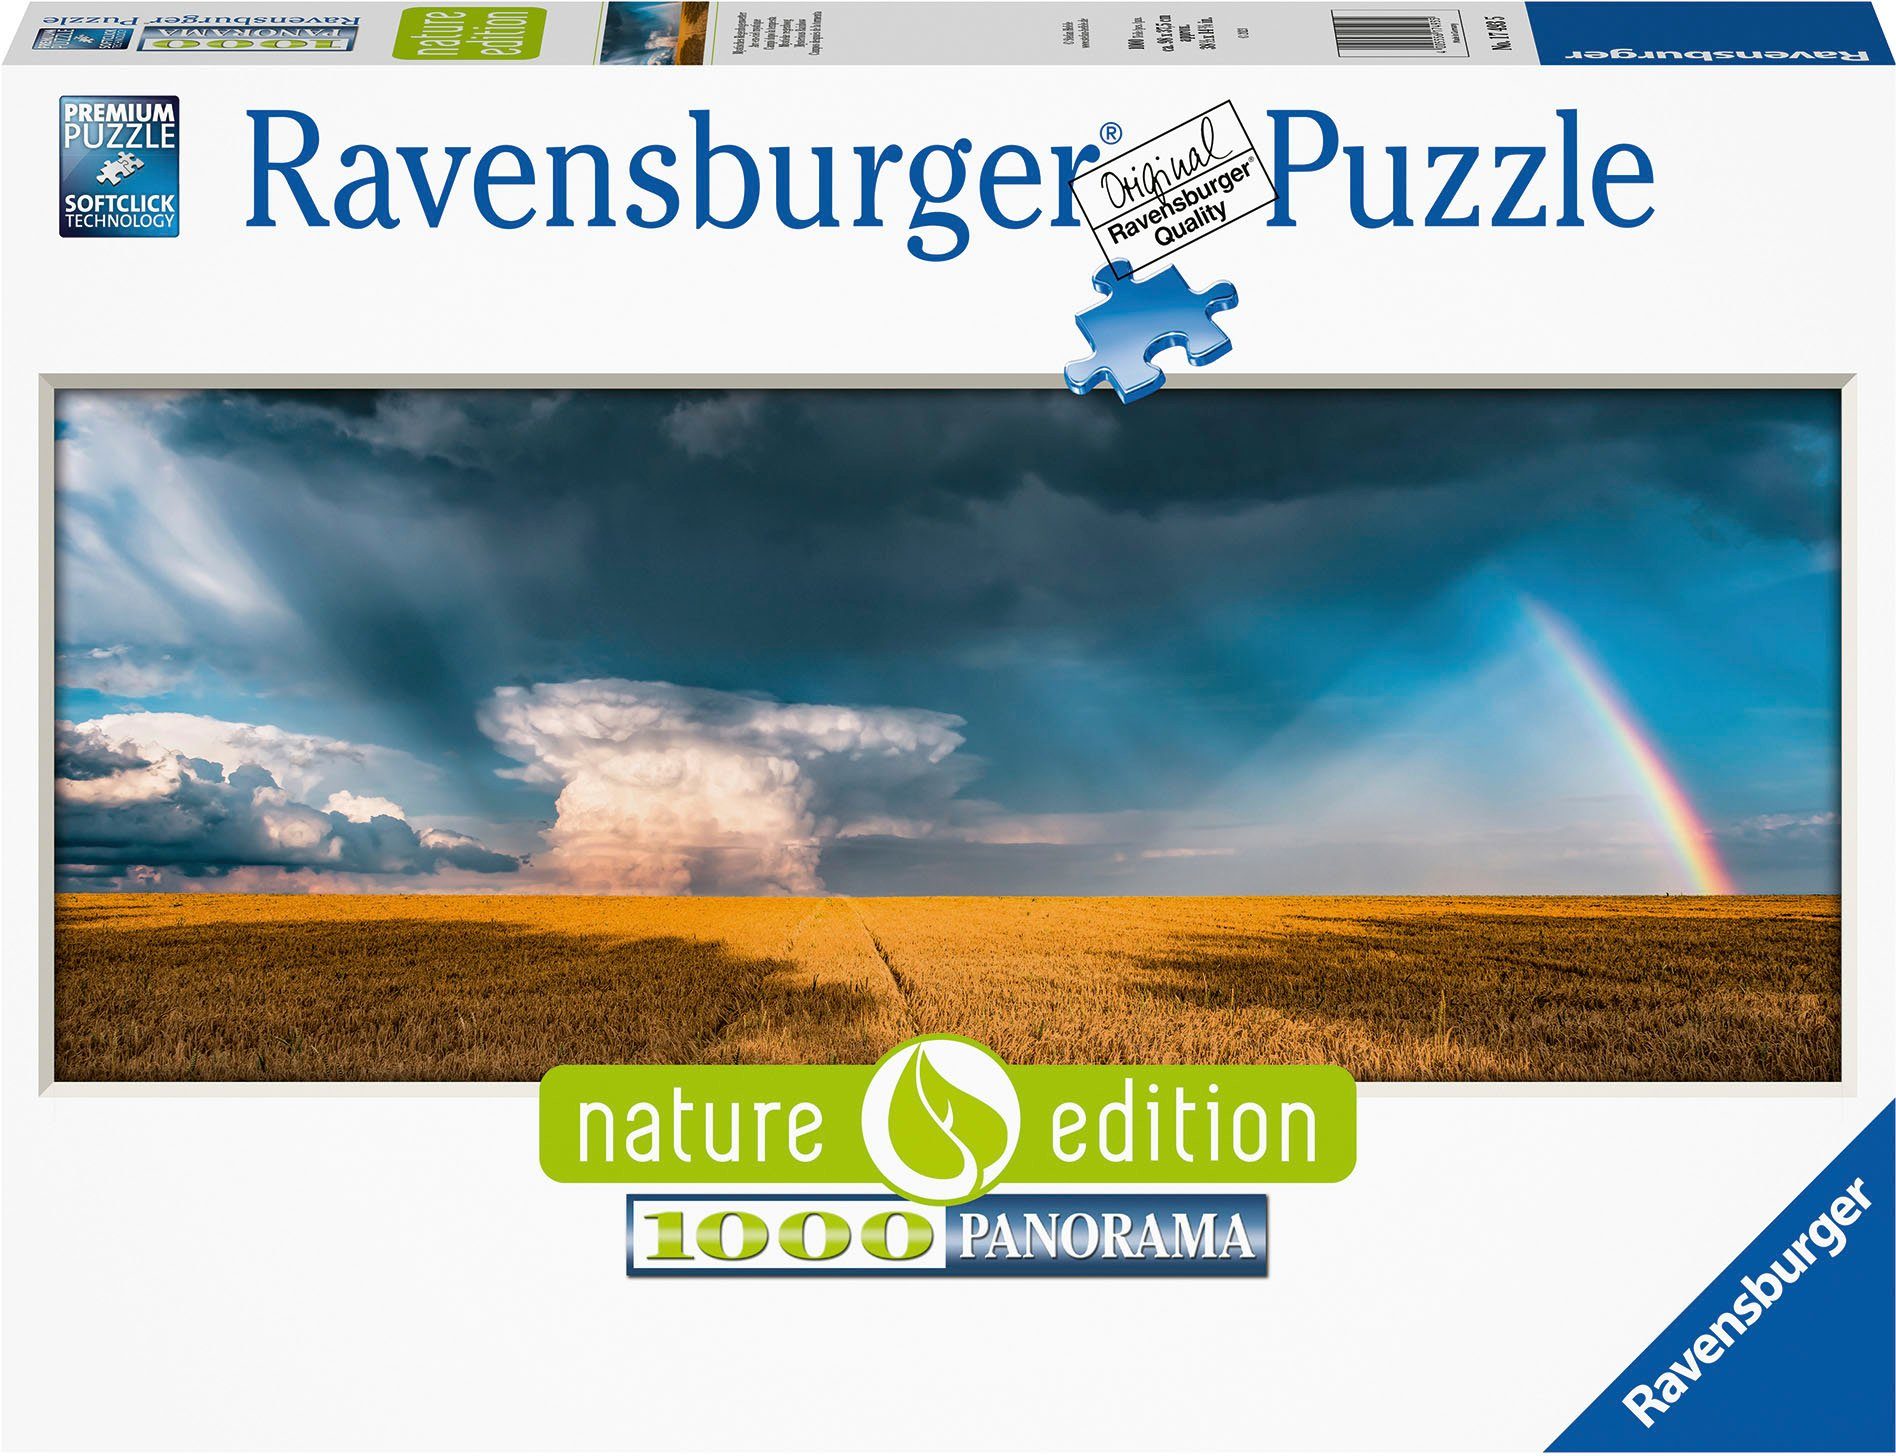 Ravensburger Puzzle nature edition, Mystisches Regenbogenwetter, 1000 Puzzleteile, Made in Germany; FSC® - schützt Wald - weltweit